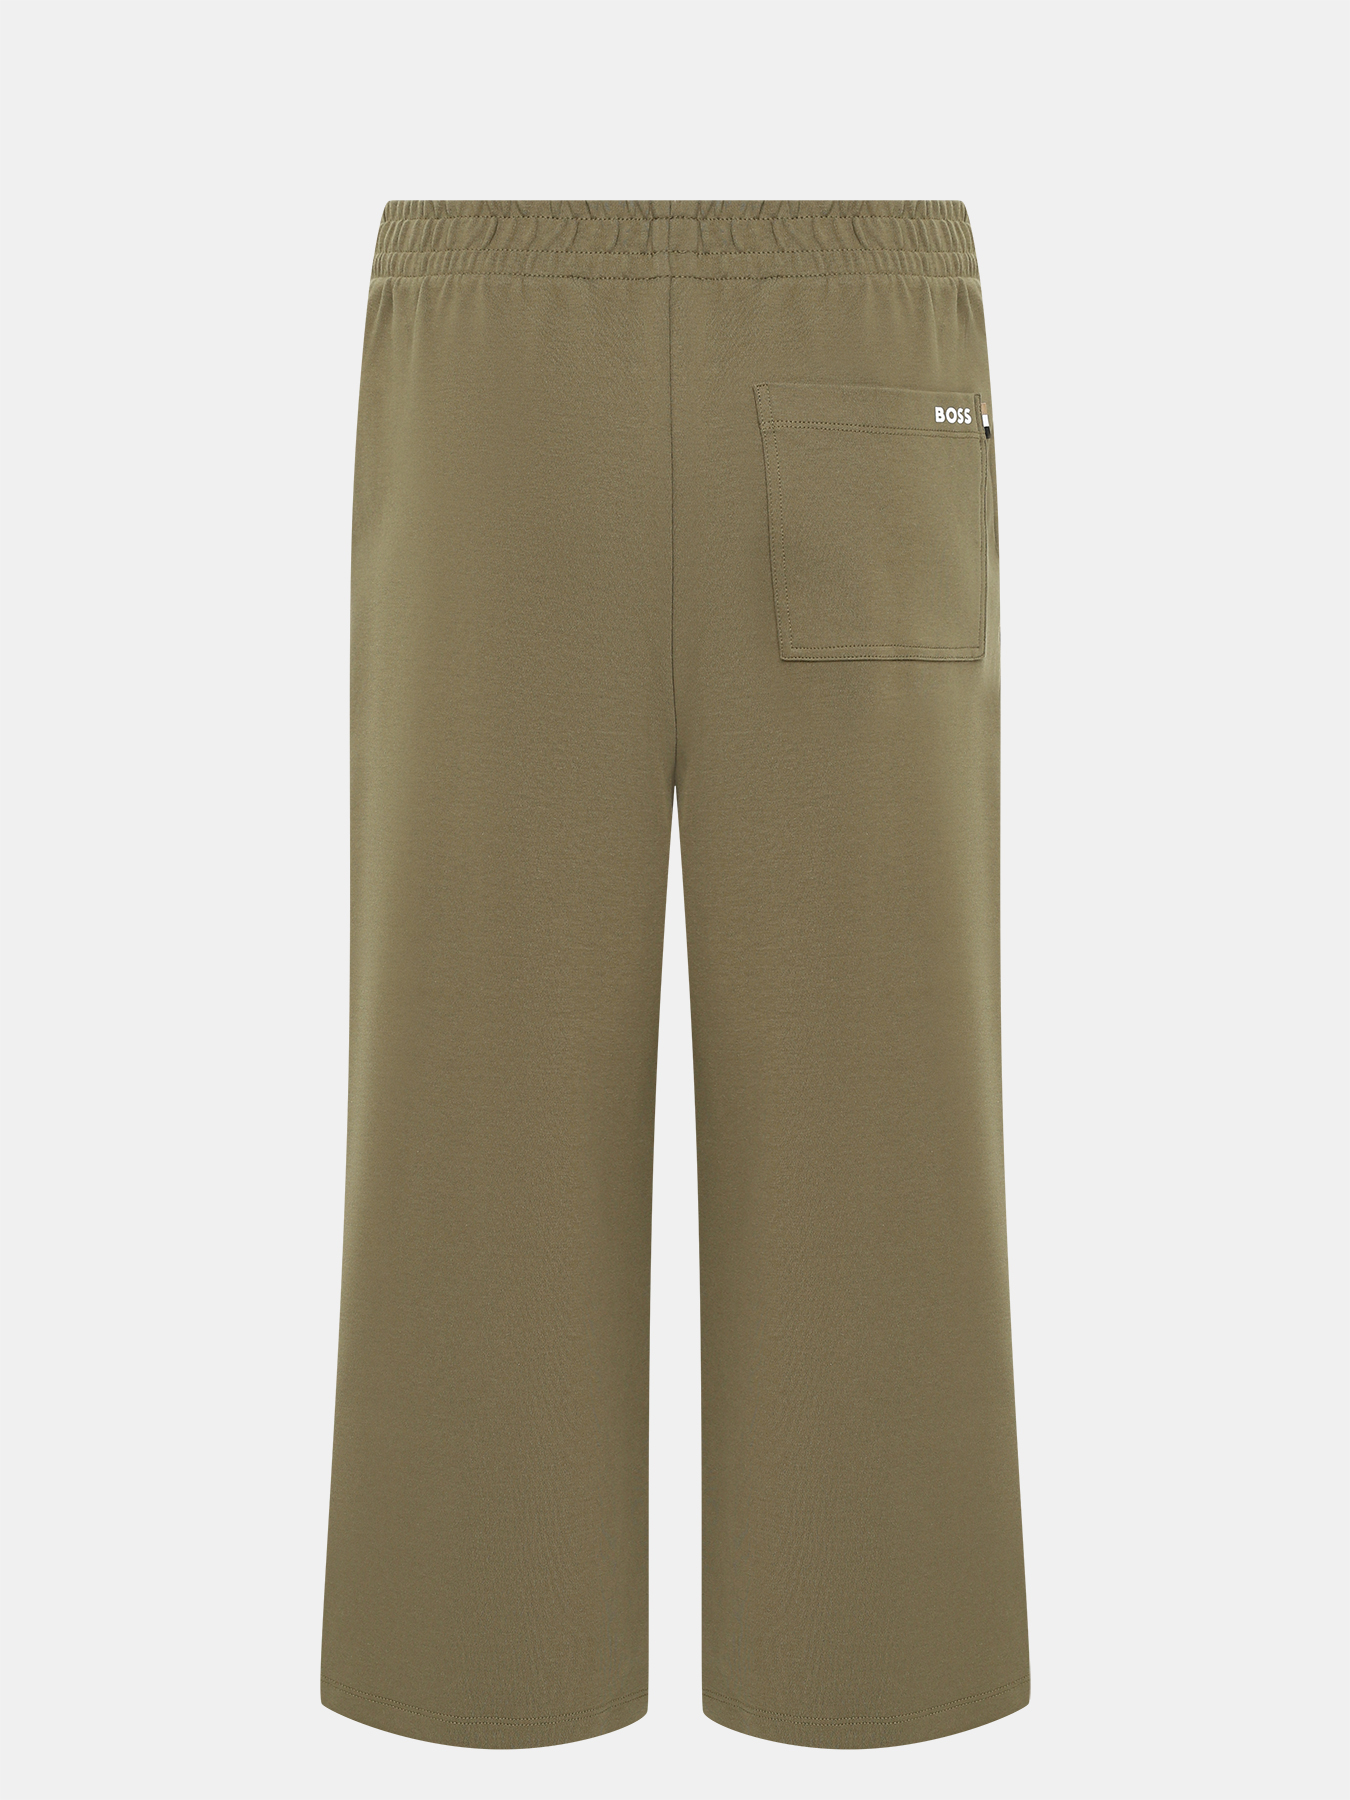 Спортивные брюки Enatea BOSS 414132-043, цвет хаки, размер 44-46 - фото 2